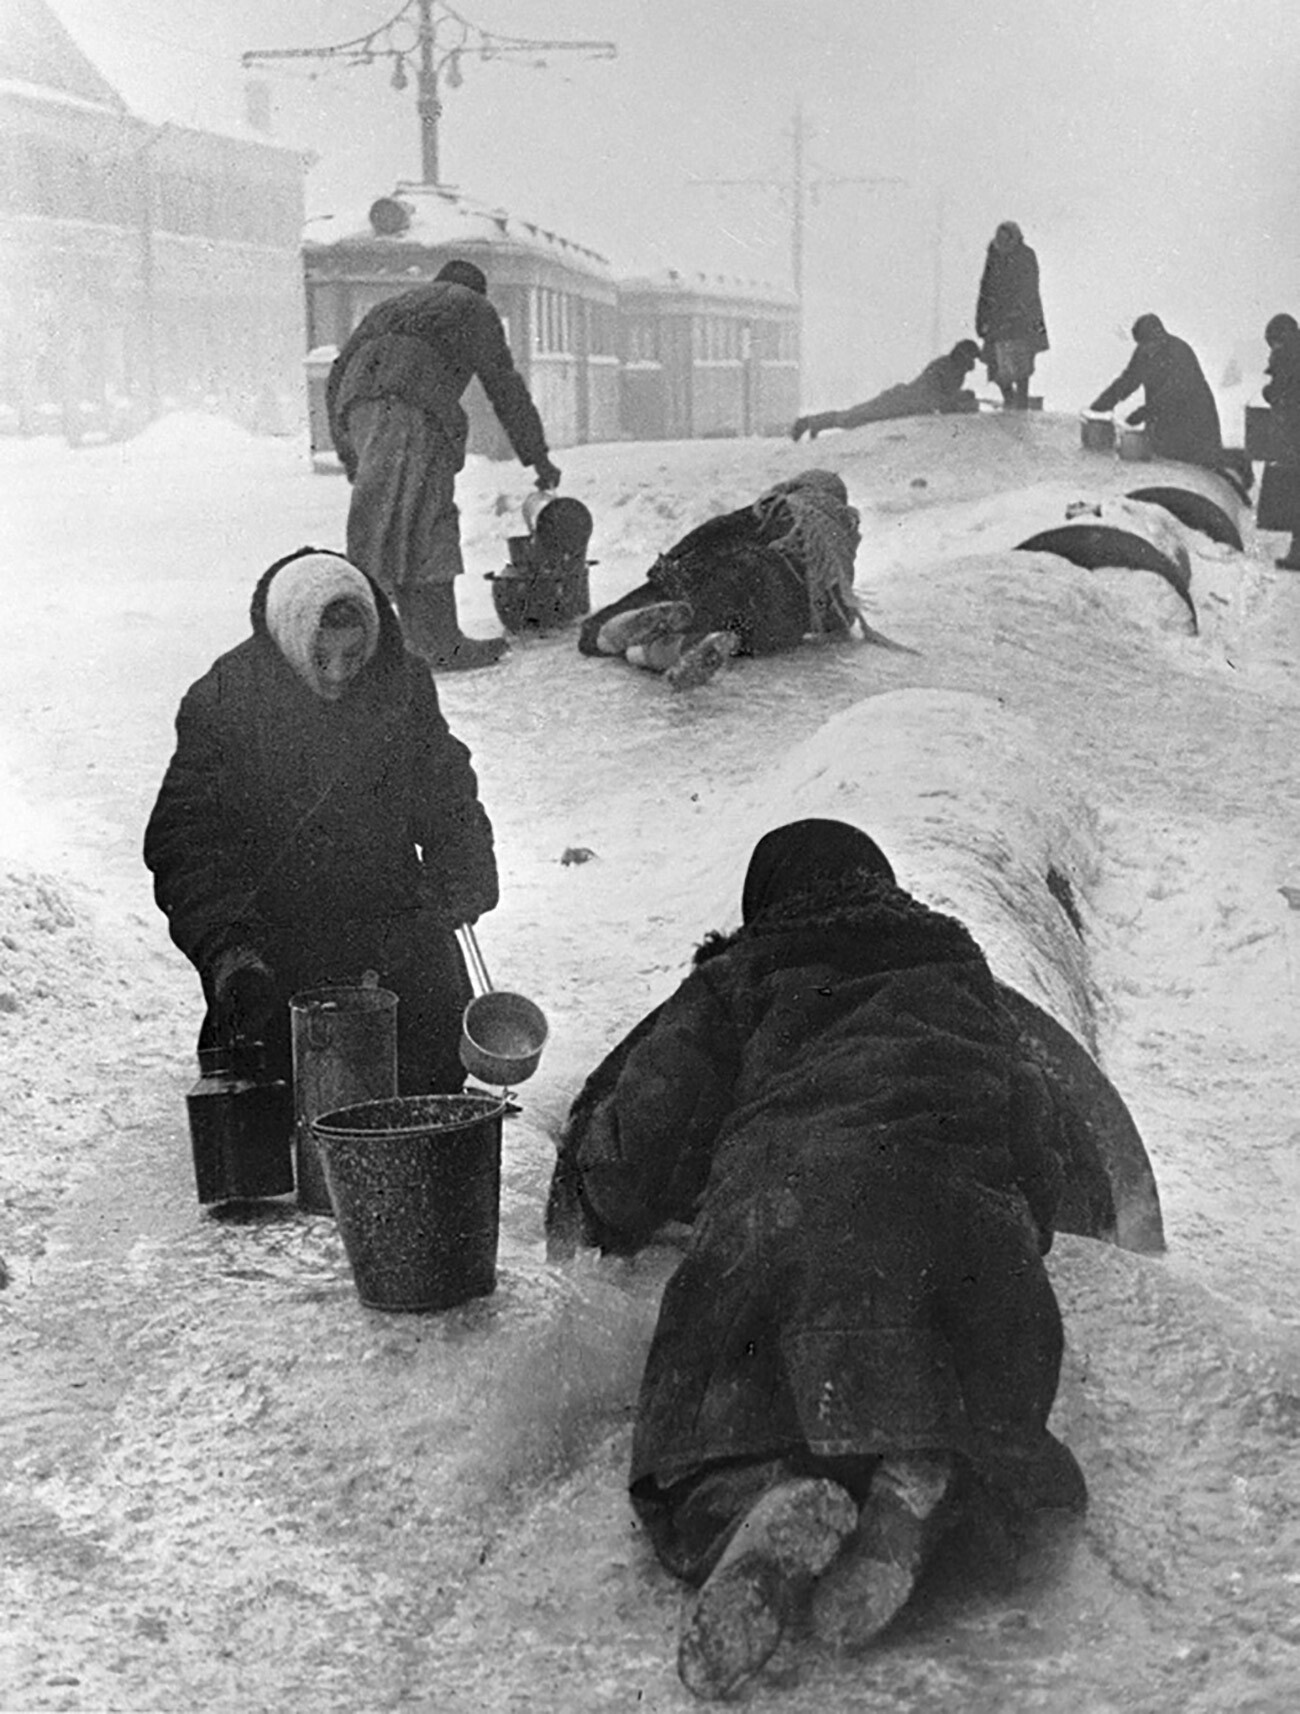 I residenti di Leningrado attingono acqua da un tubo rotto in una strada ghiacciata
